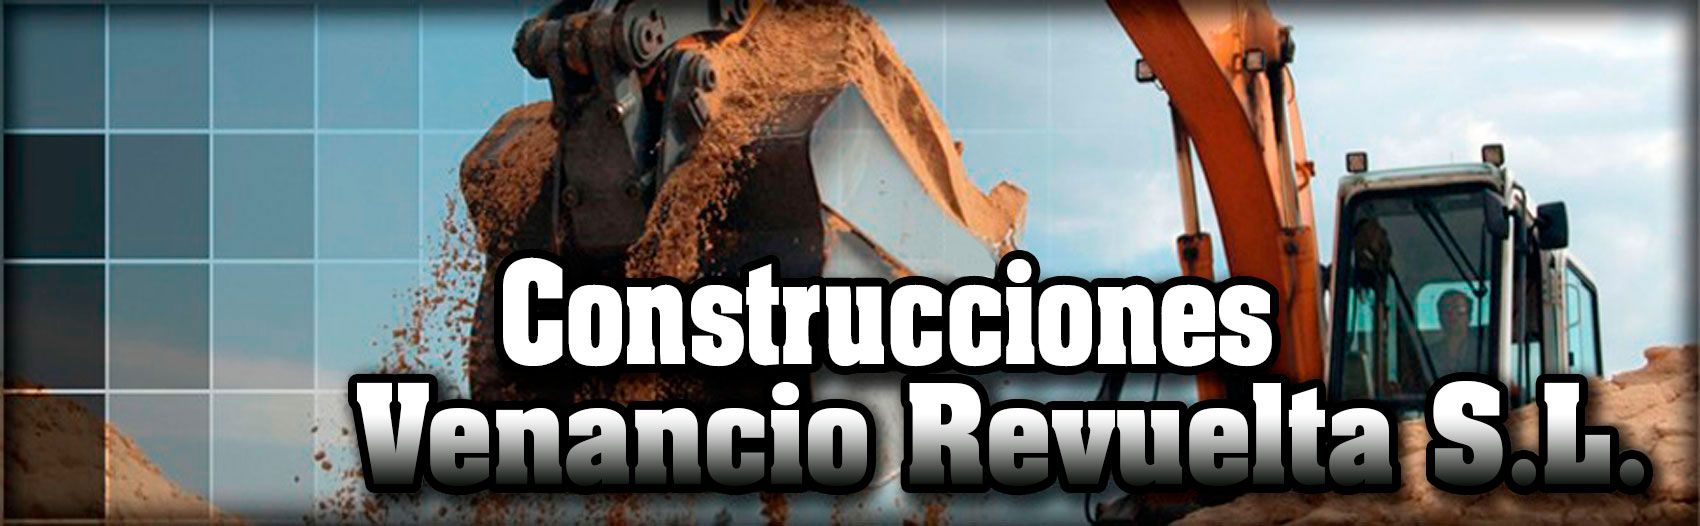 Construcciones Venancio Revuelta S.L. excavadora